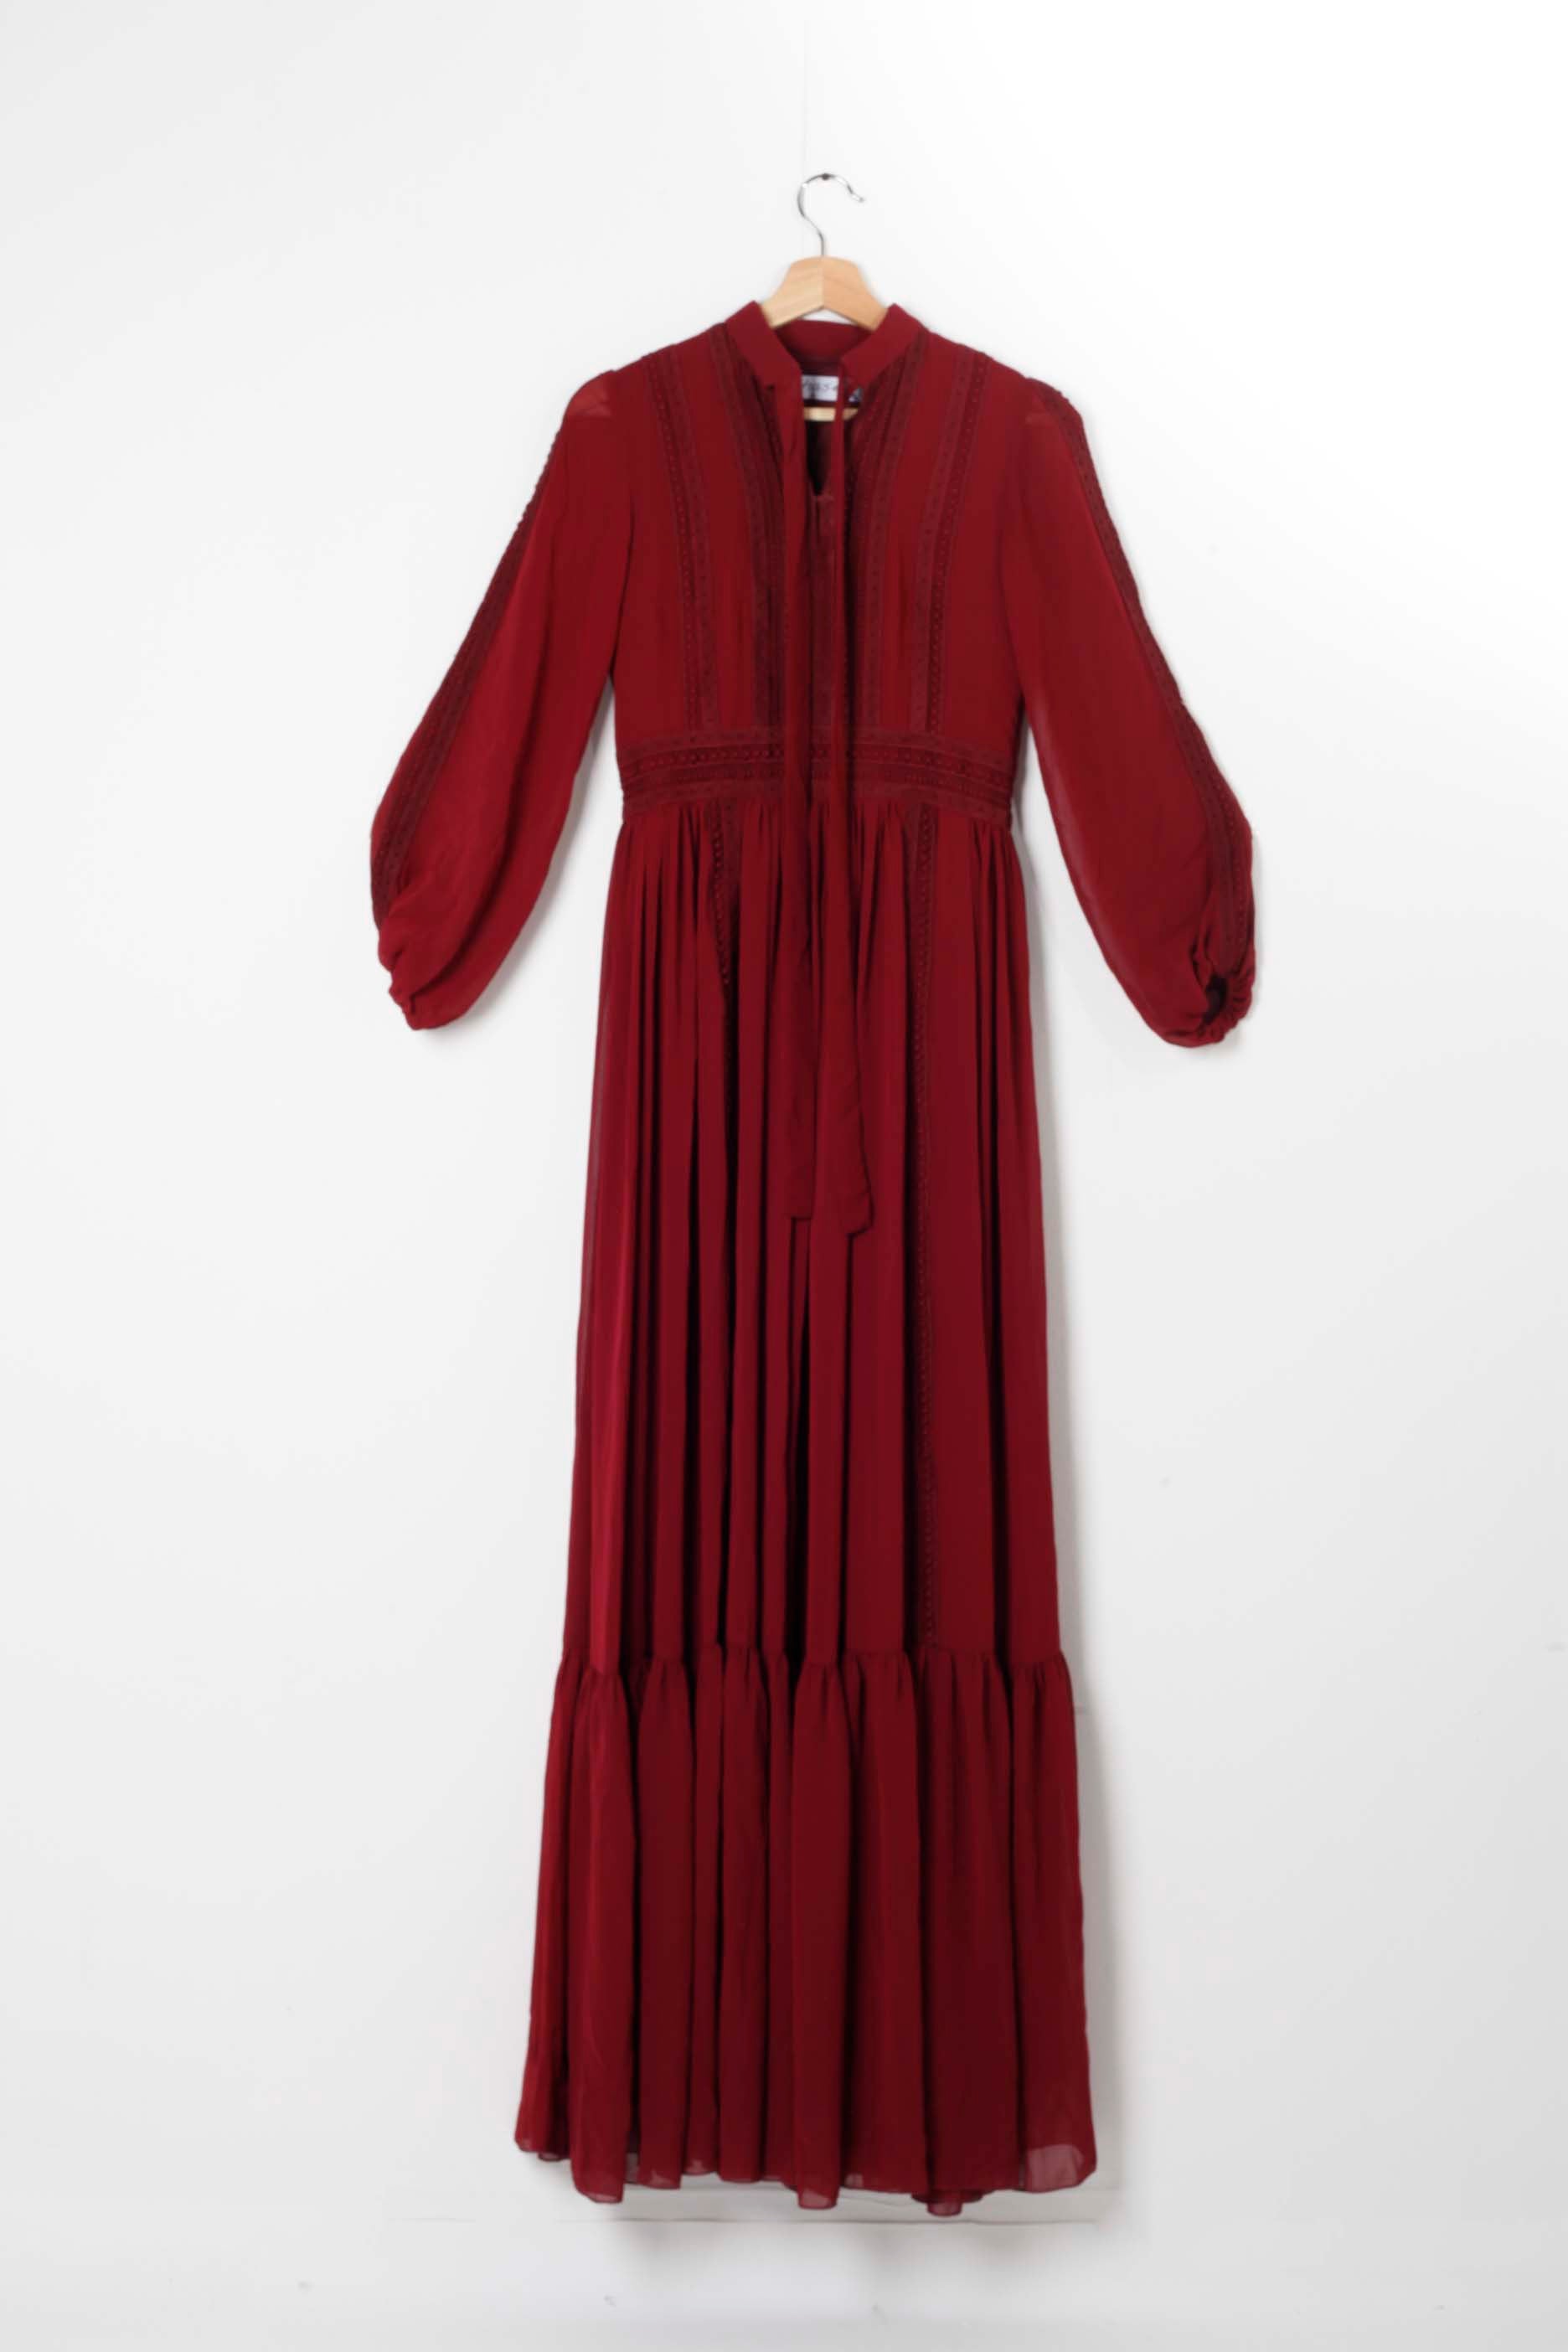 Floor-length Red Dress (Medium)